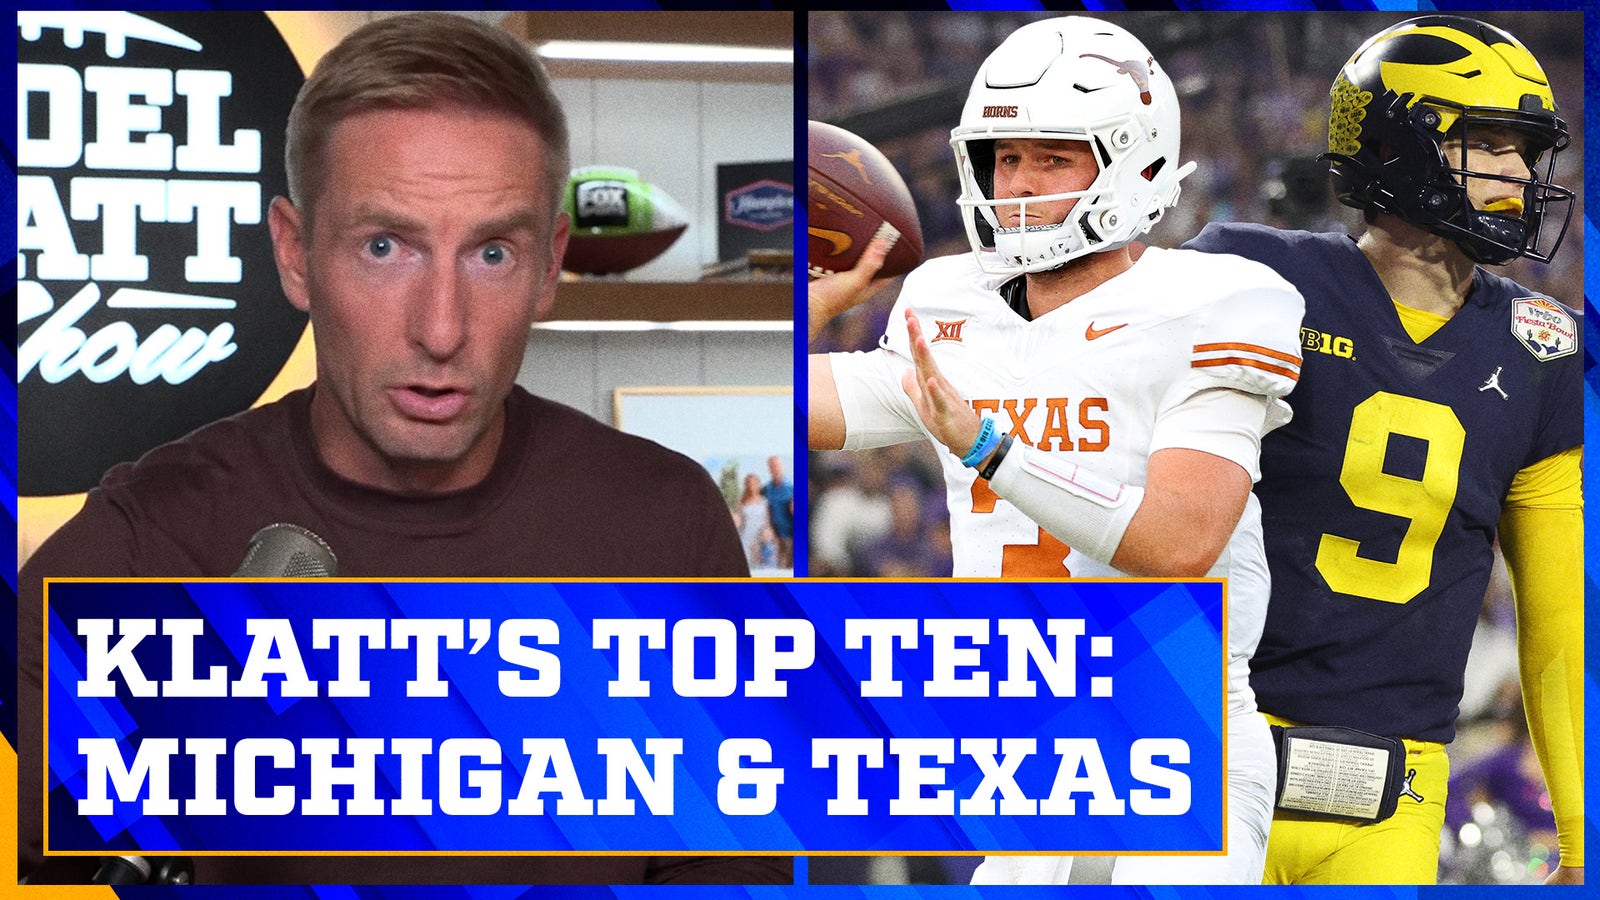 Michigan and Texas headline Joel Klatt's Top 10